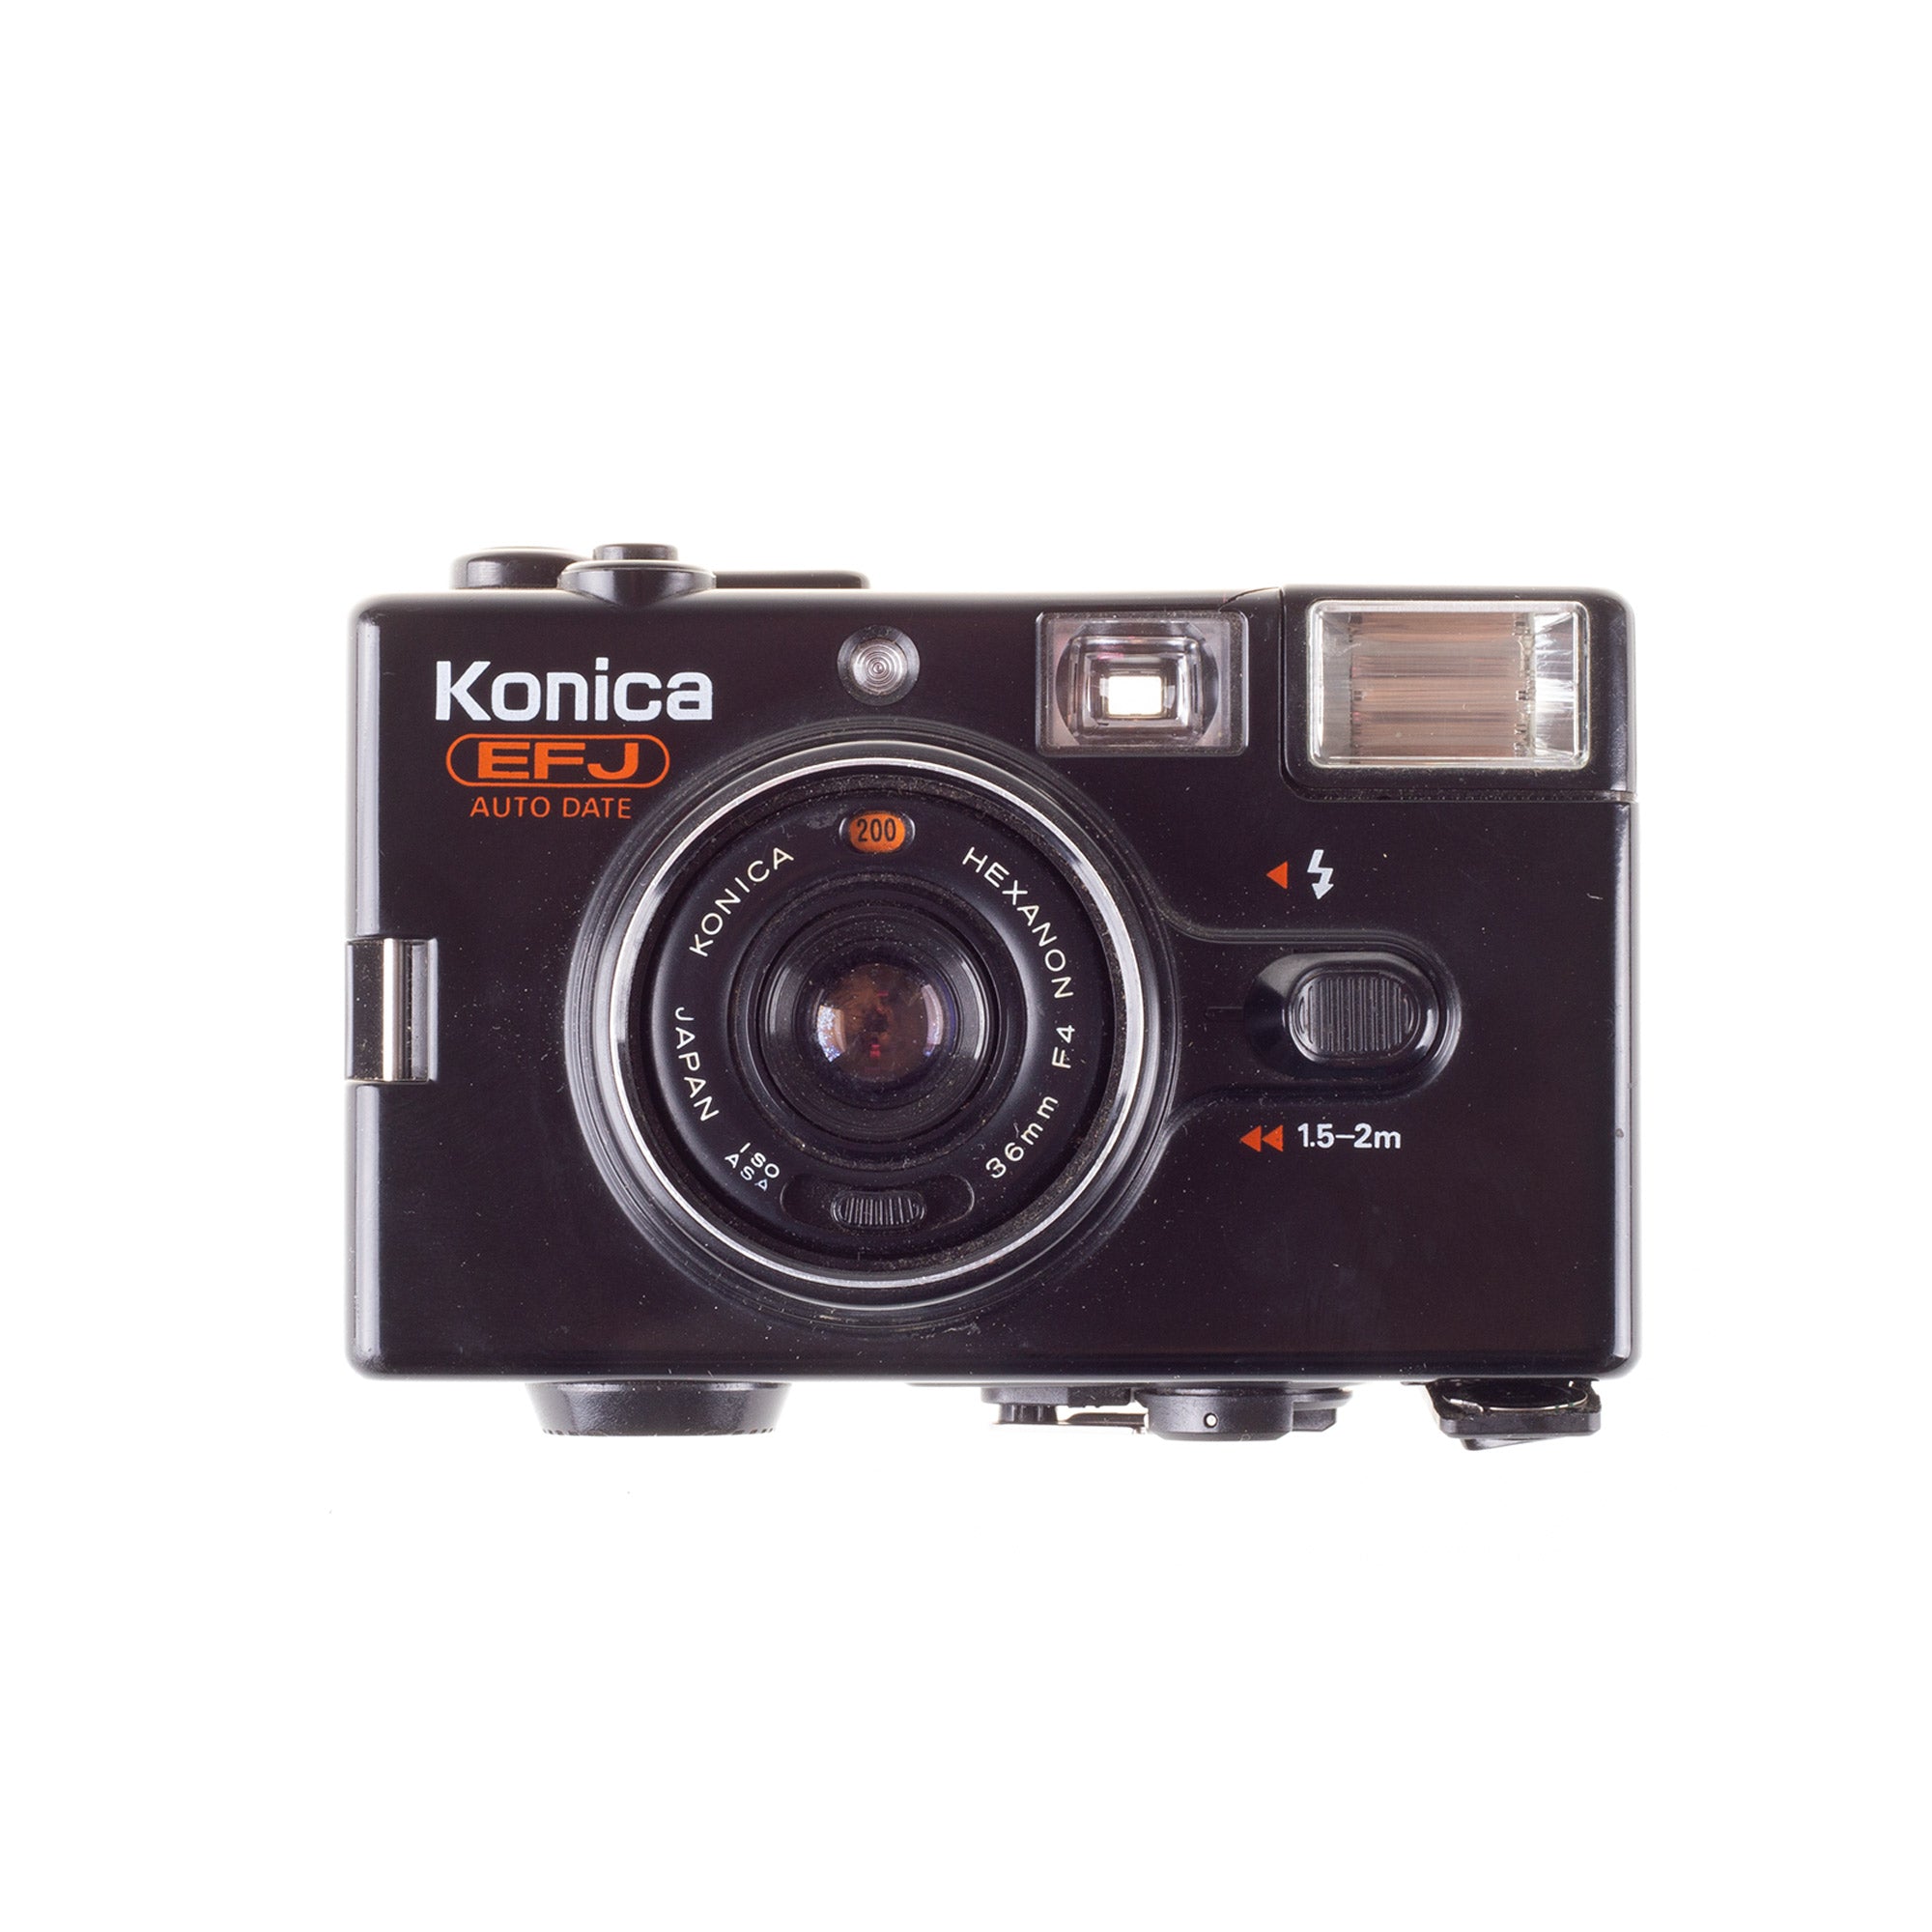 全国宅配無料 AUTO Konica Konica コニカ フィルムカメラ - EFJ 